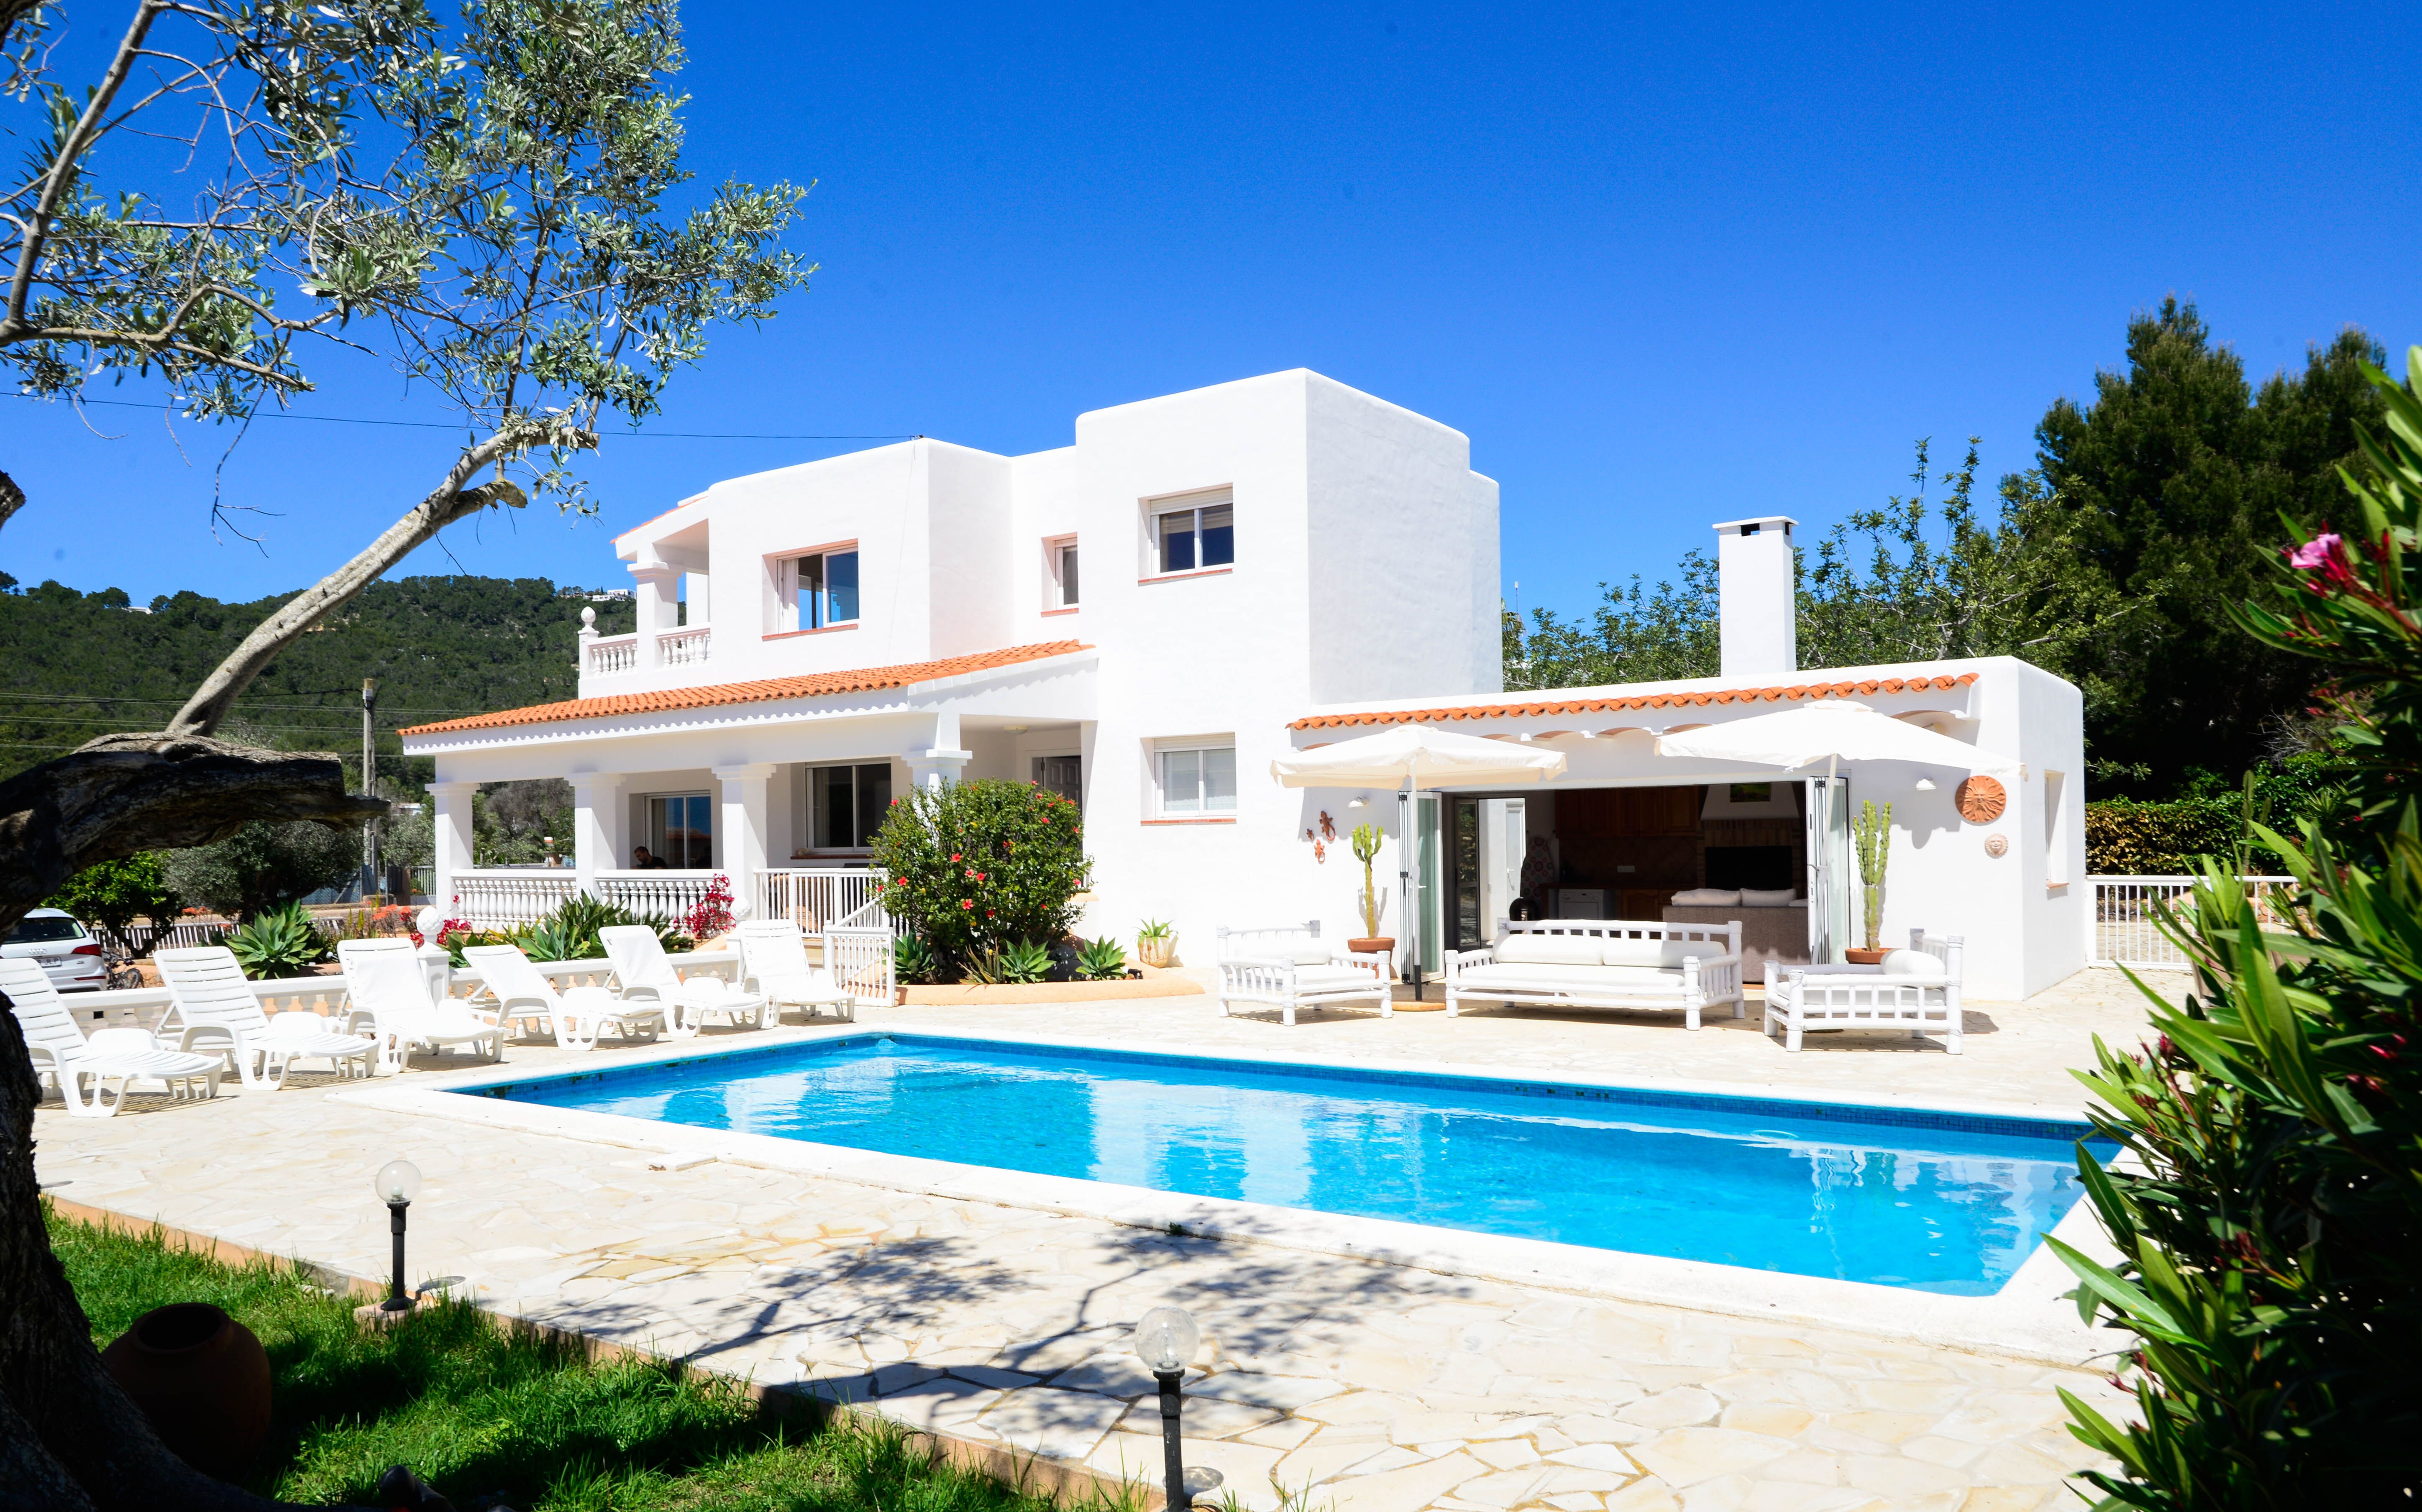 Huis met toeristische vergunning in de buurt van Ibiza te koop